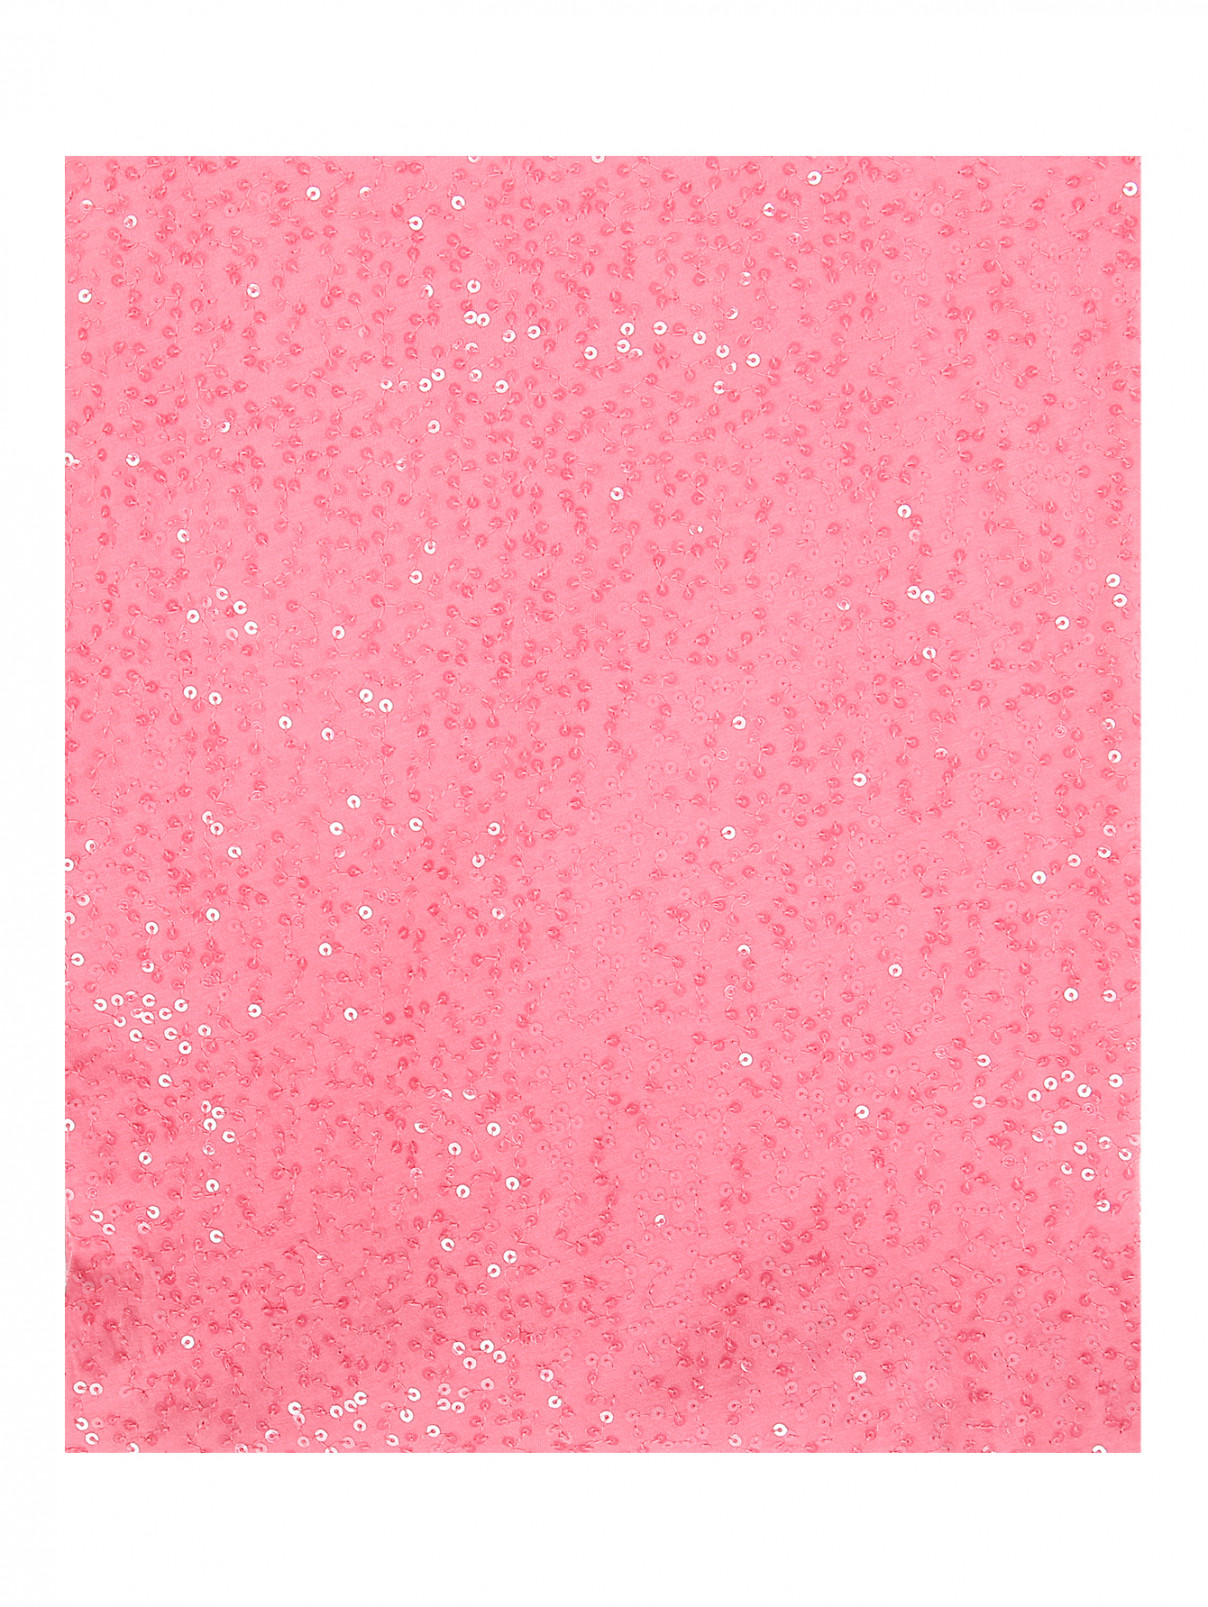 Шарф-снуд из хлопка декорированный пайетками DKNY  –  Общий вид  – Цвет:  Розовый